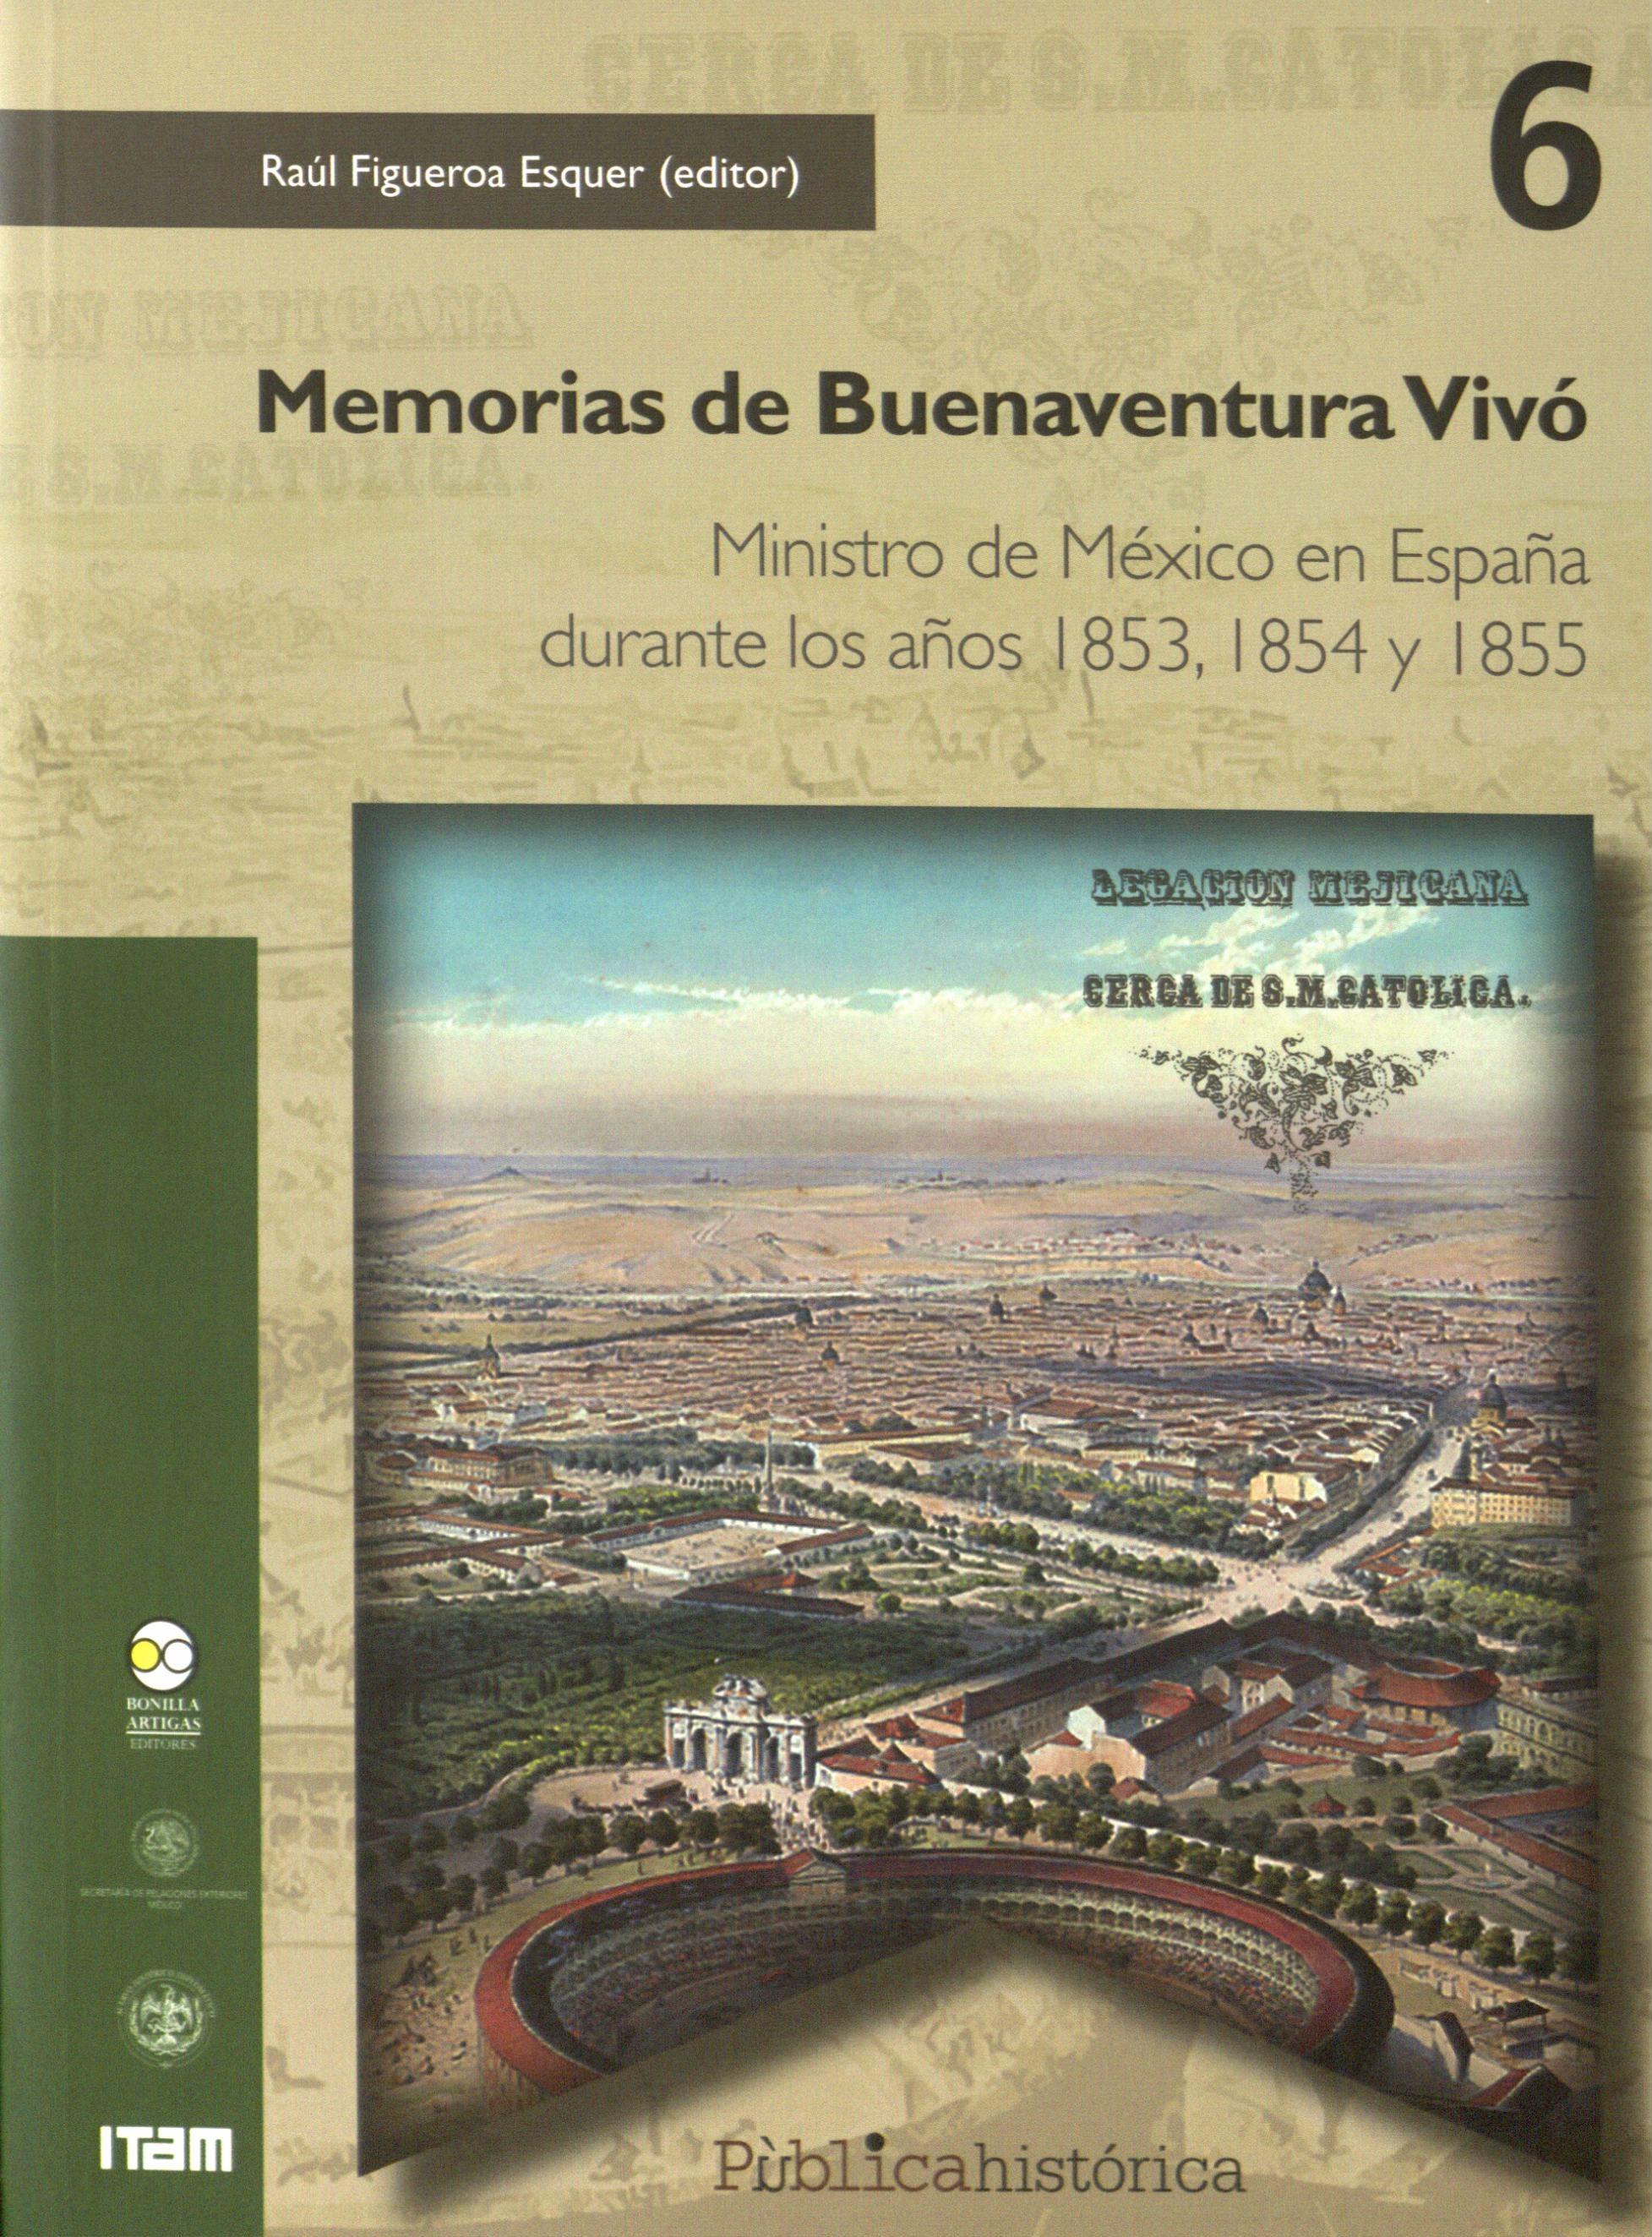 Memorias de Buenaventura Vivó "Ministro de México en España durante los años 1853, 1854 y 1855"